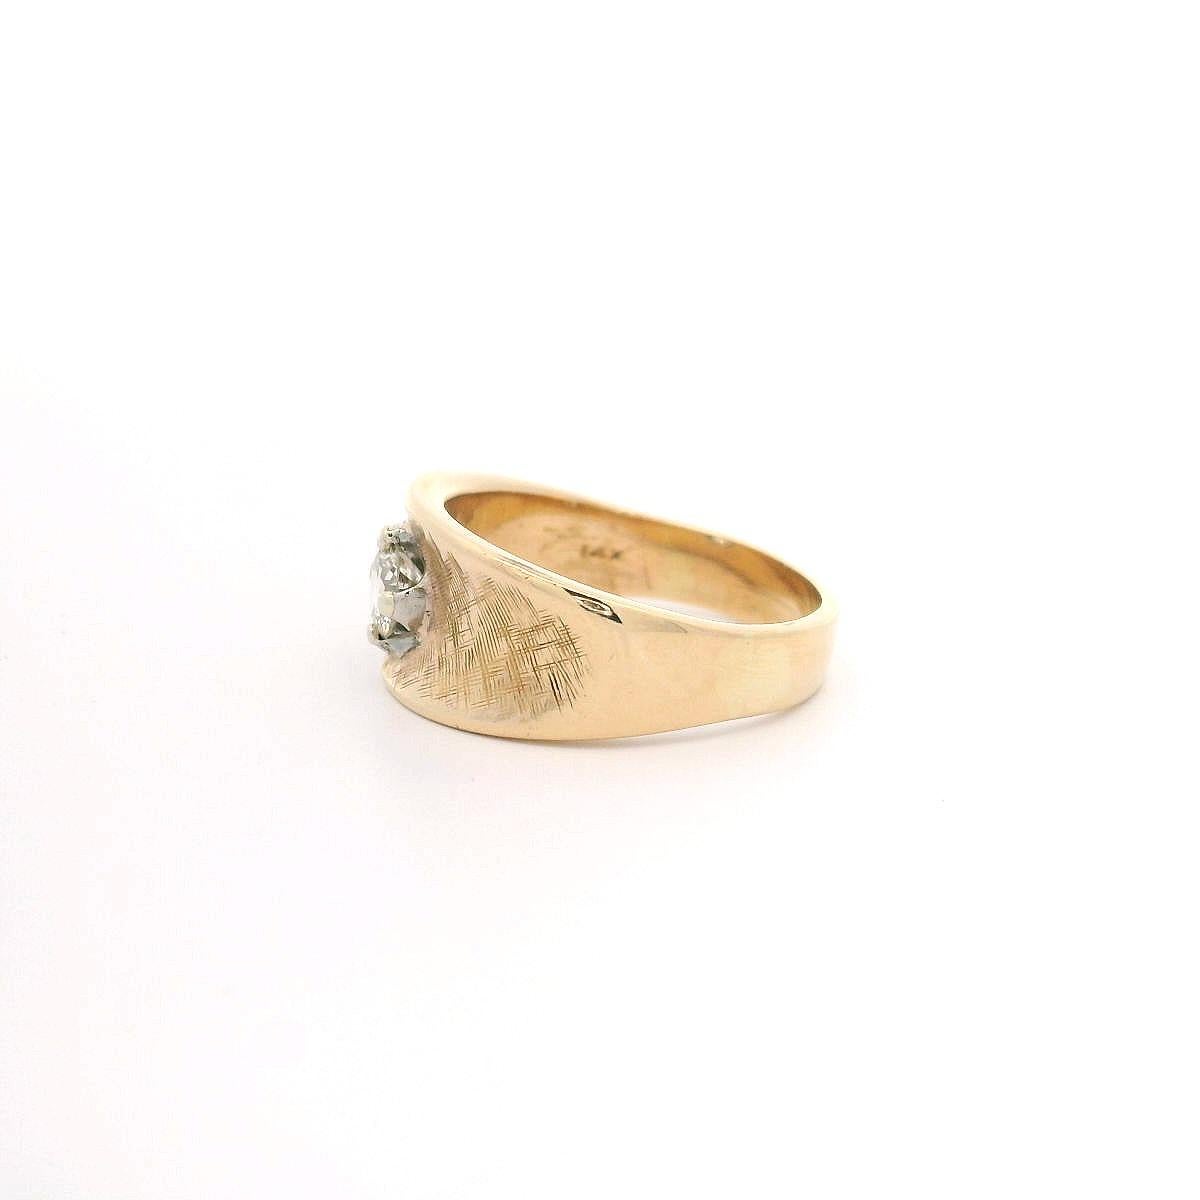 --Pierre(s) :...
(1) Diamant naturel véritable - taille ronde brillante - serti - couleur H/I - pureté VVS2/VS1 - 0,33 mm (approx.)

MATERIAL : Or jaune 14k massif
Poids : 5,5 grammes
Taille de la bague : 6,5 (ajustée sur un doigt, veuillez nous